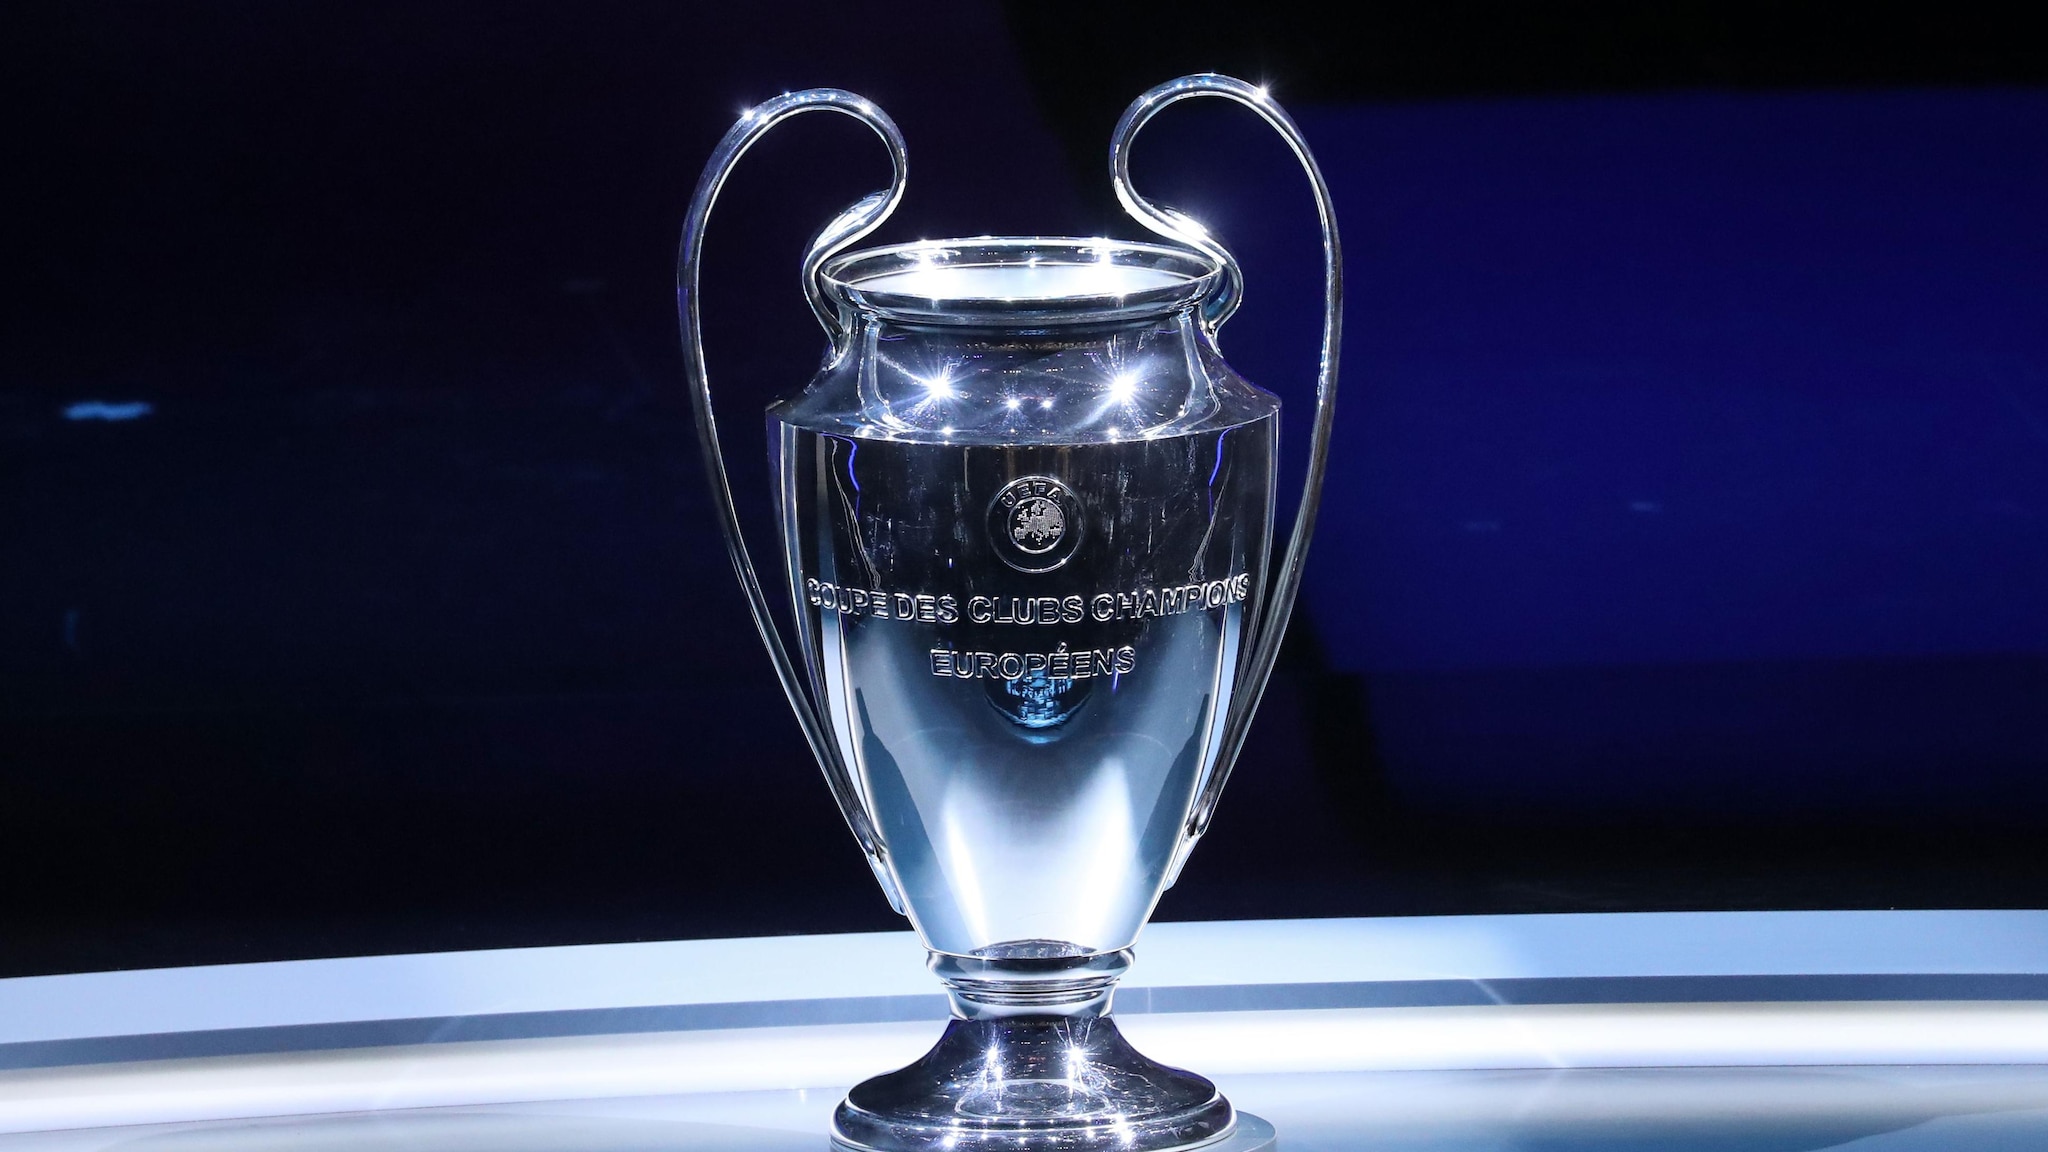 El trofeo de la UEFA Champions League, UEFA Champions League